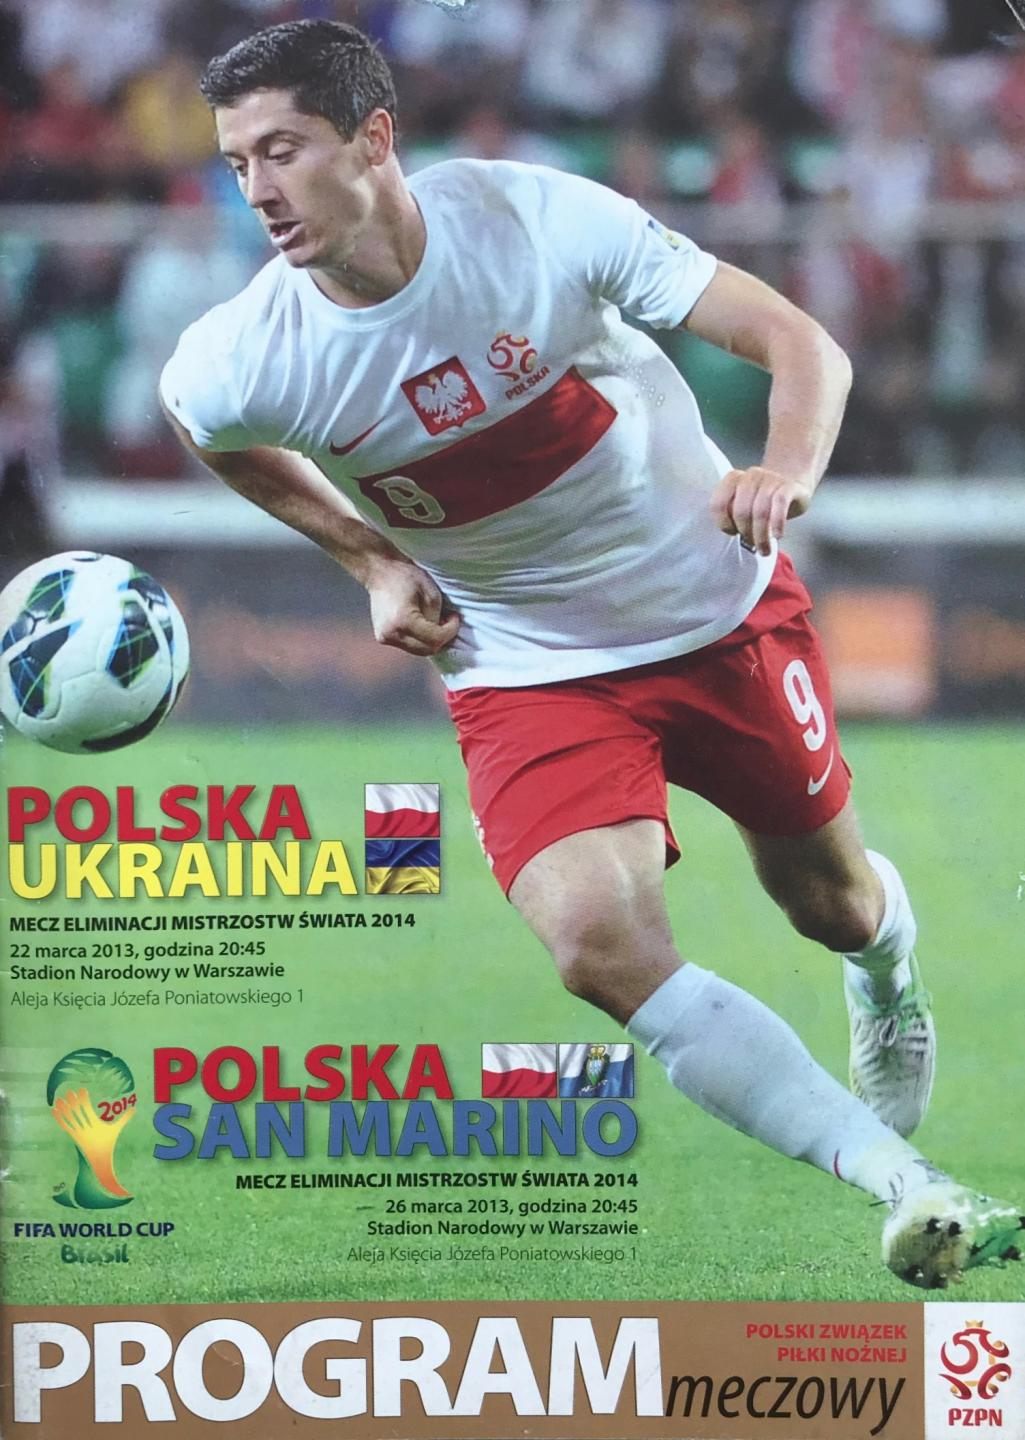 Program meczowy Polska - Ukraina 1:3 (22.03.2013) i Polska - San Marino 5:0 (26.03.2013)